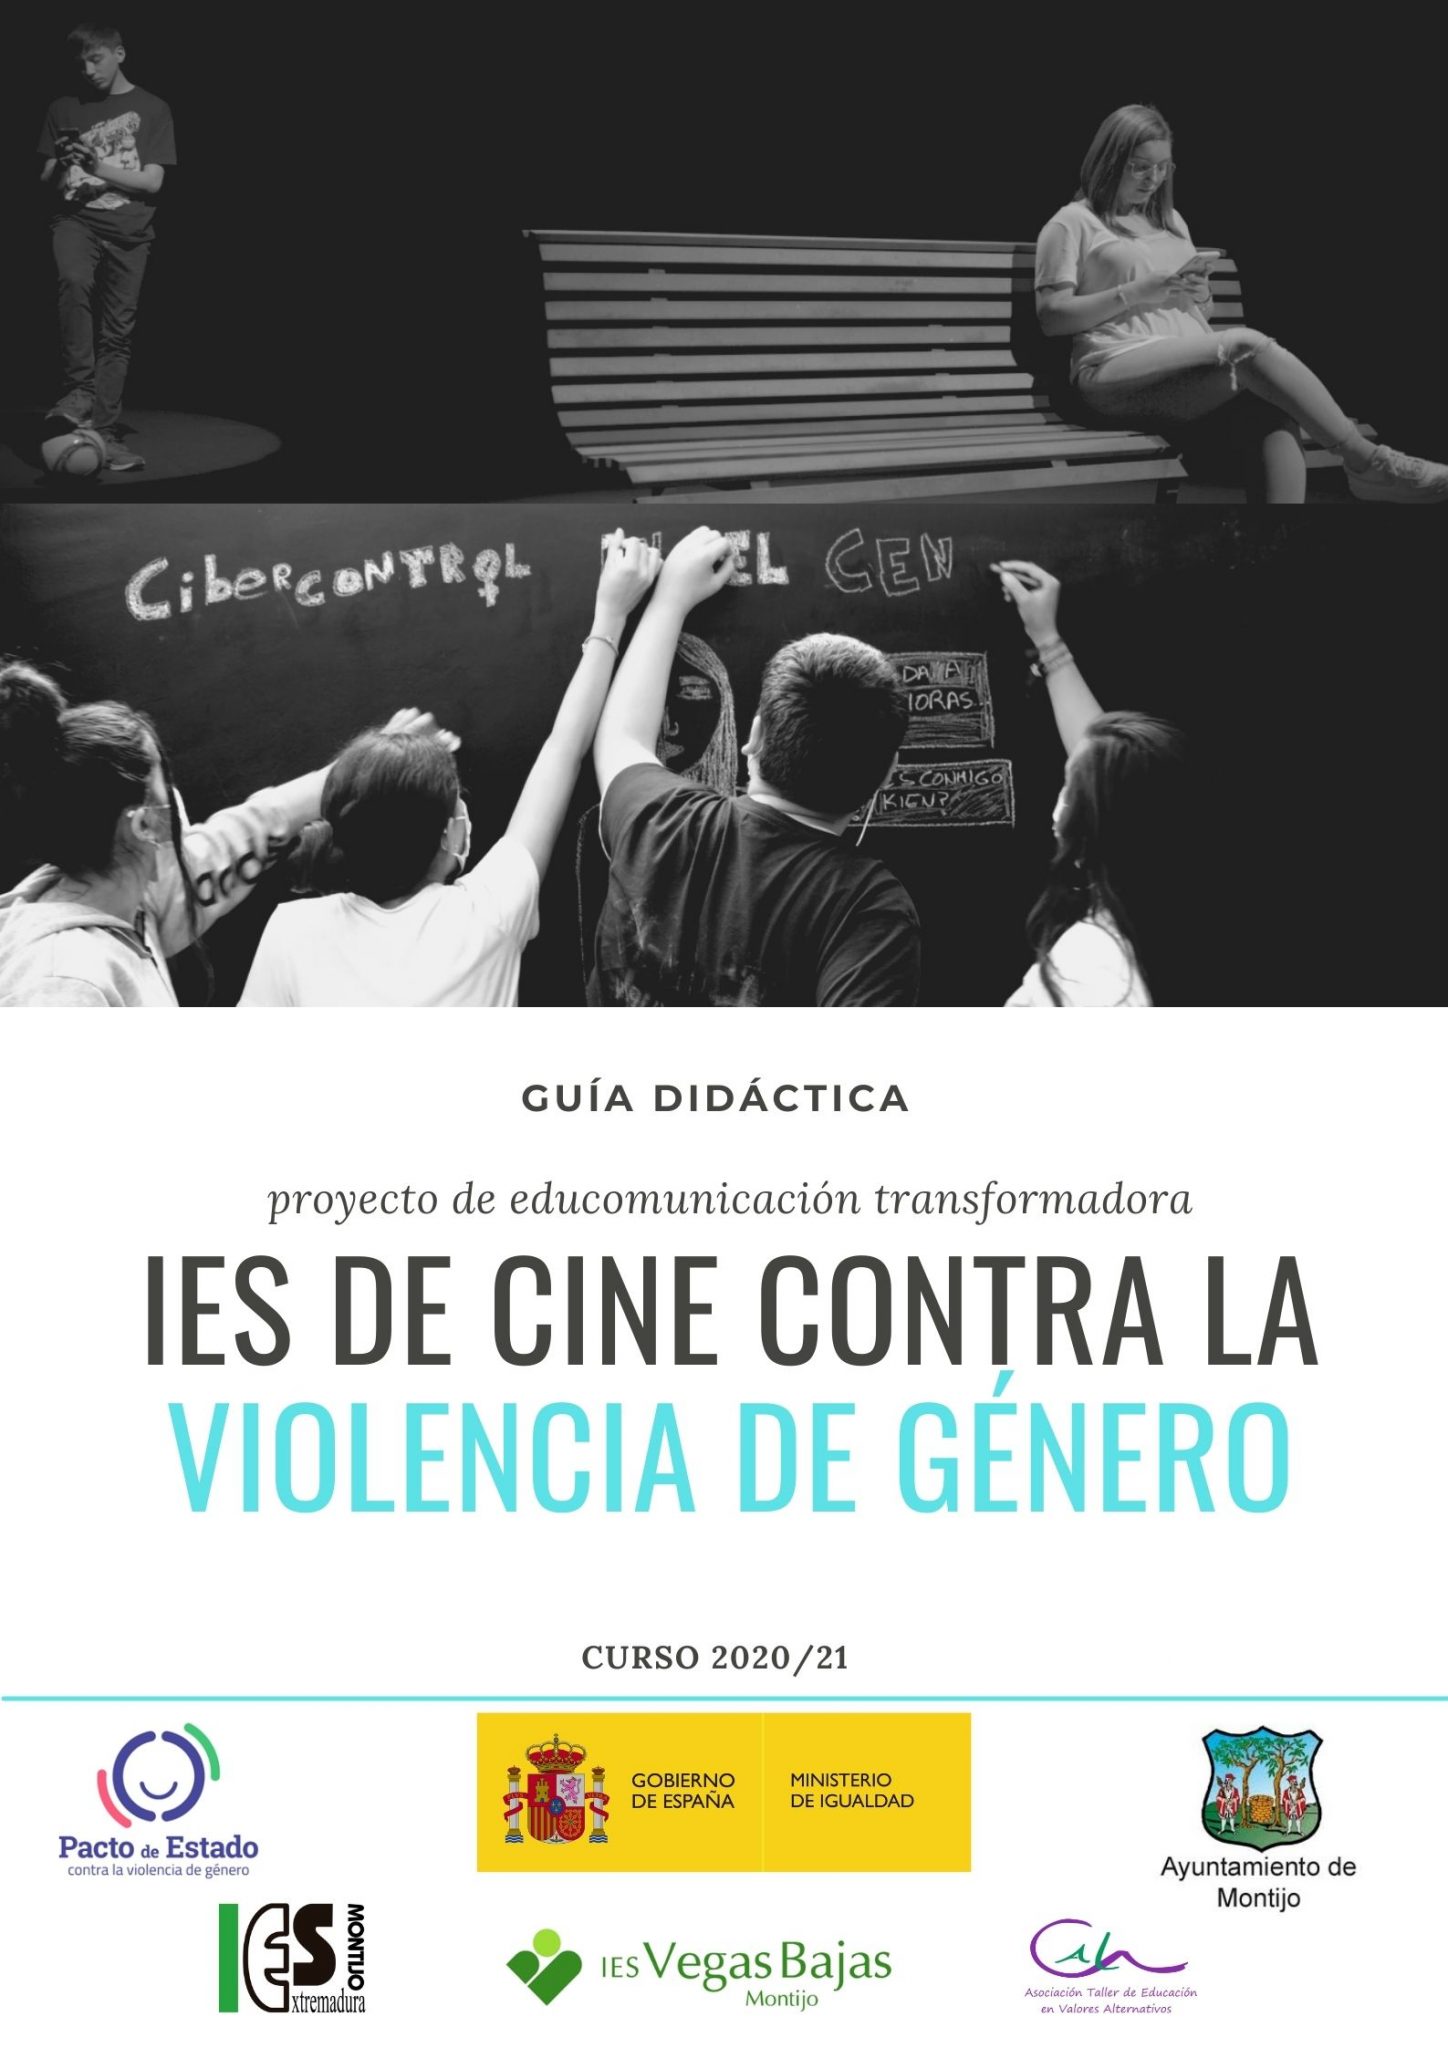 GUÍA DIDÁCTICA "IES DE CINE CONTRA LA VIOLENCIA DE GÉNERO"